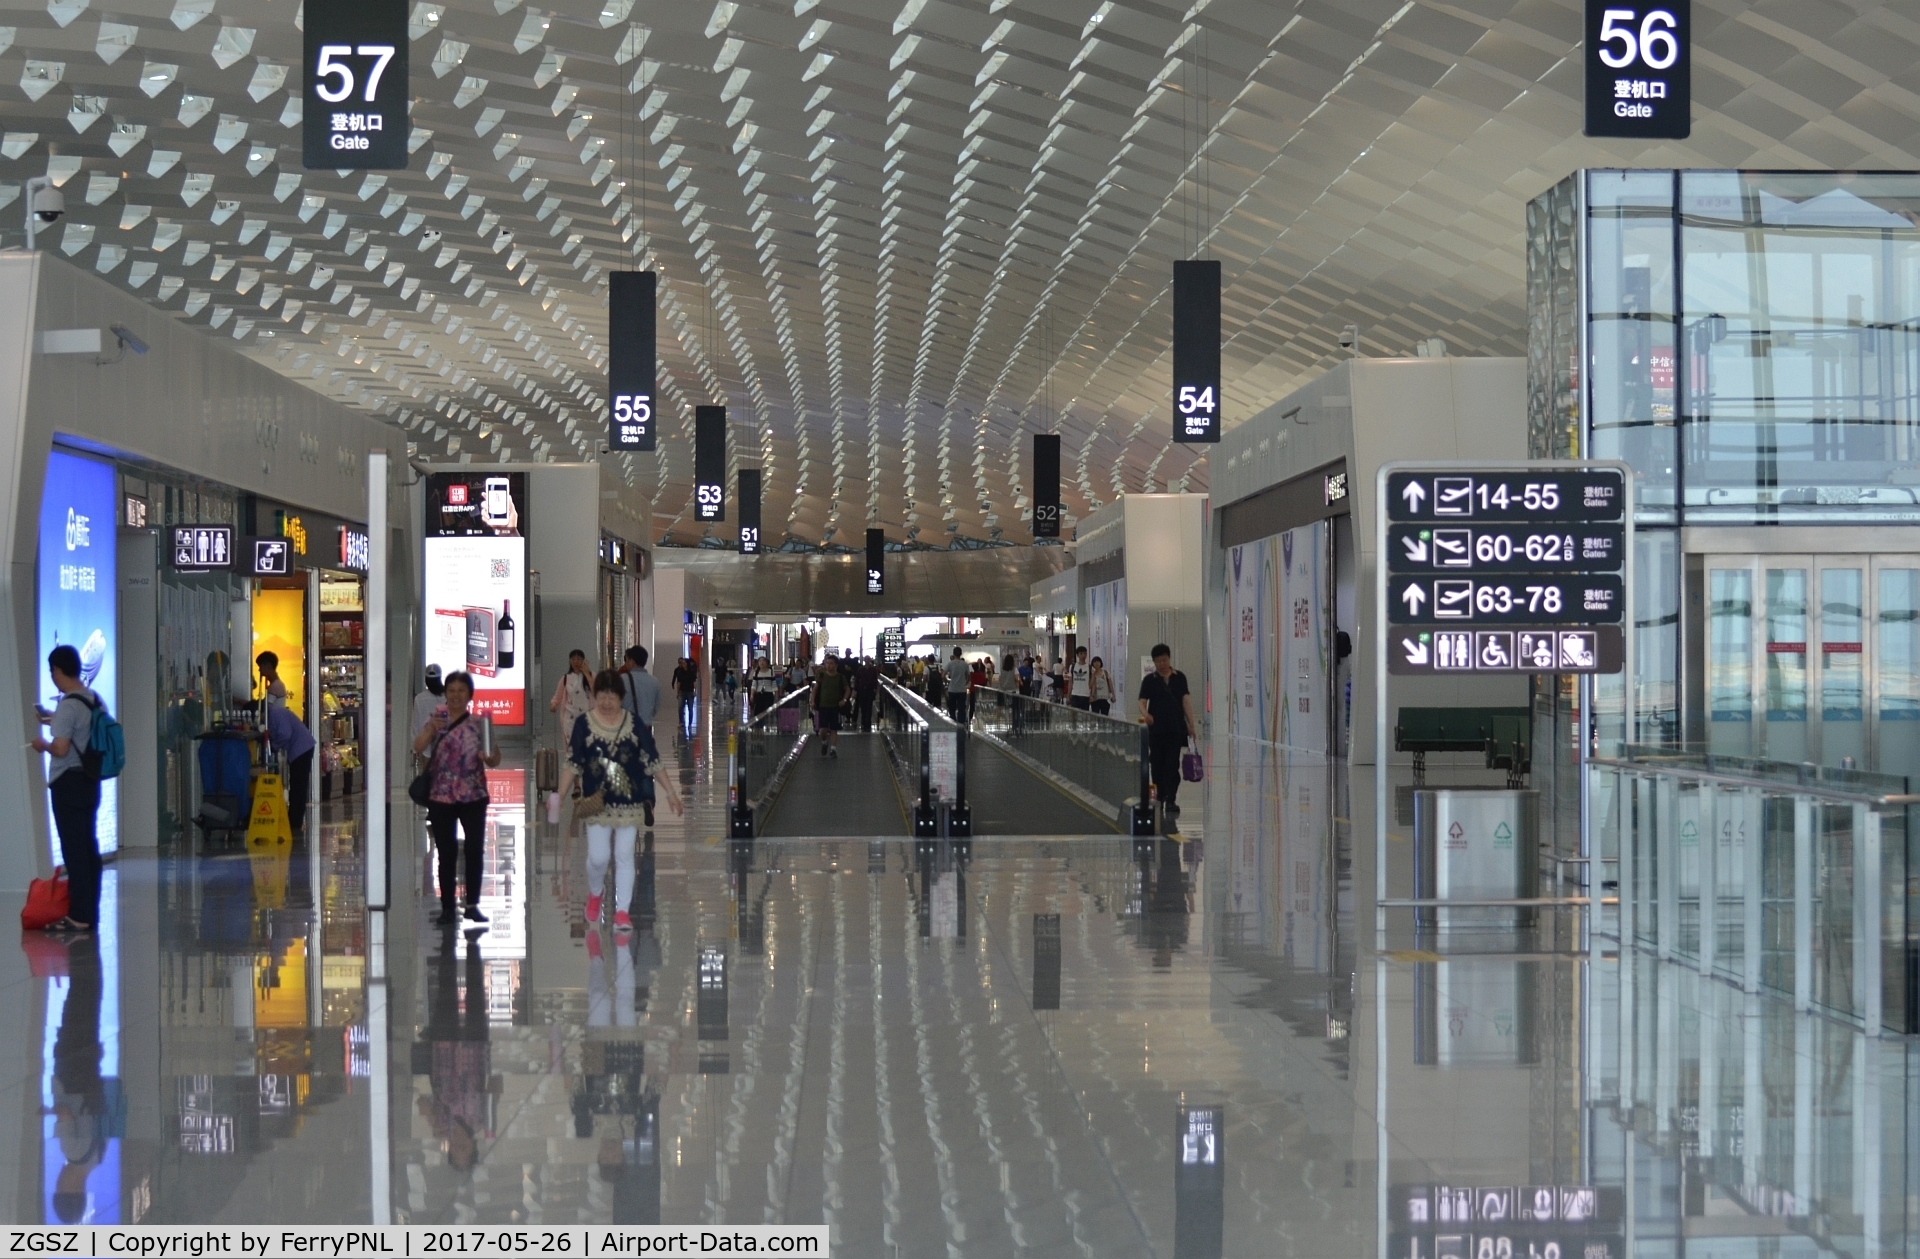 Shenzhen Bao'an International Airport, Shenzhen, Guangdong China (ZGSZ) - Terminal Shenzhen Bao'an International Airport